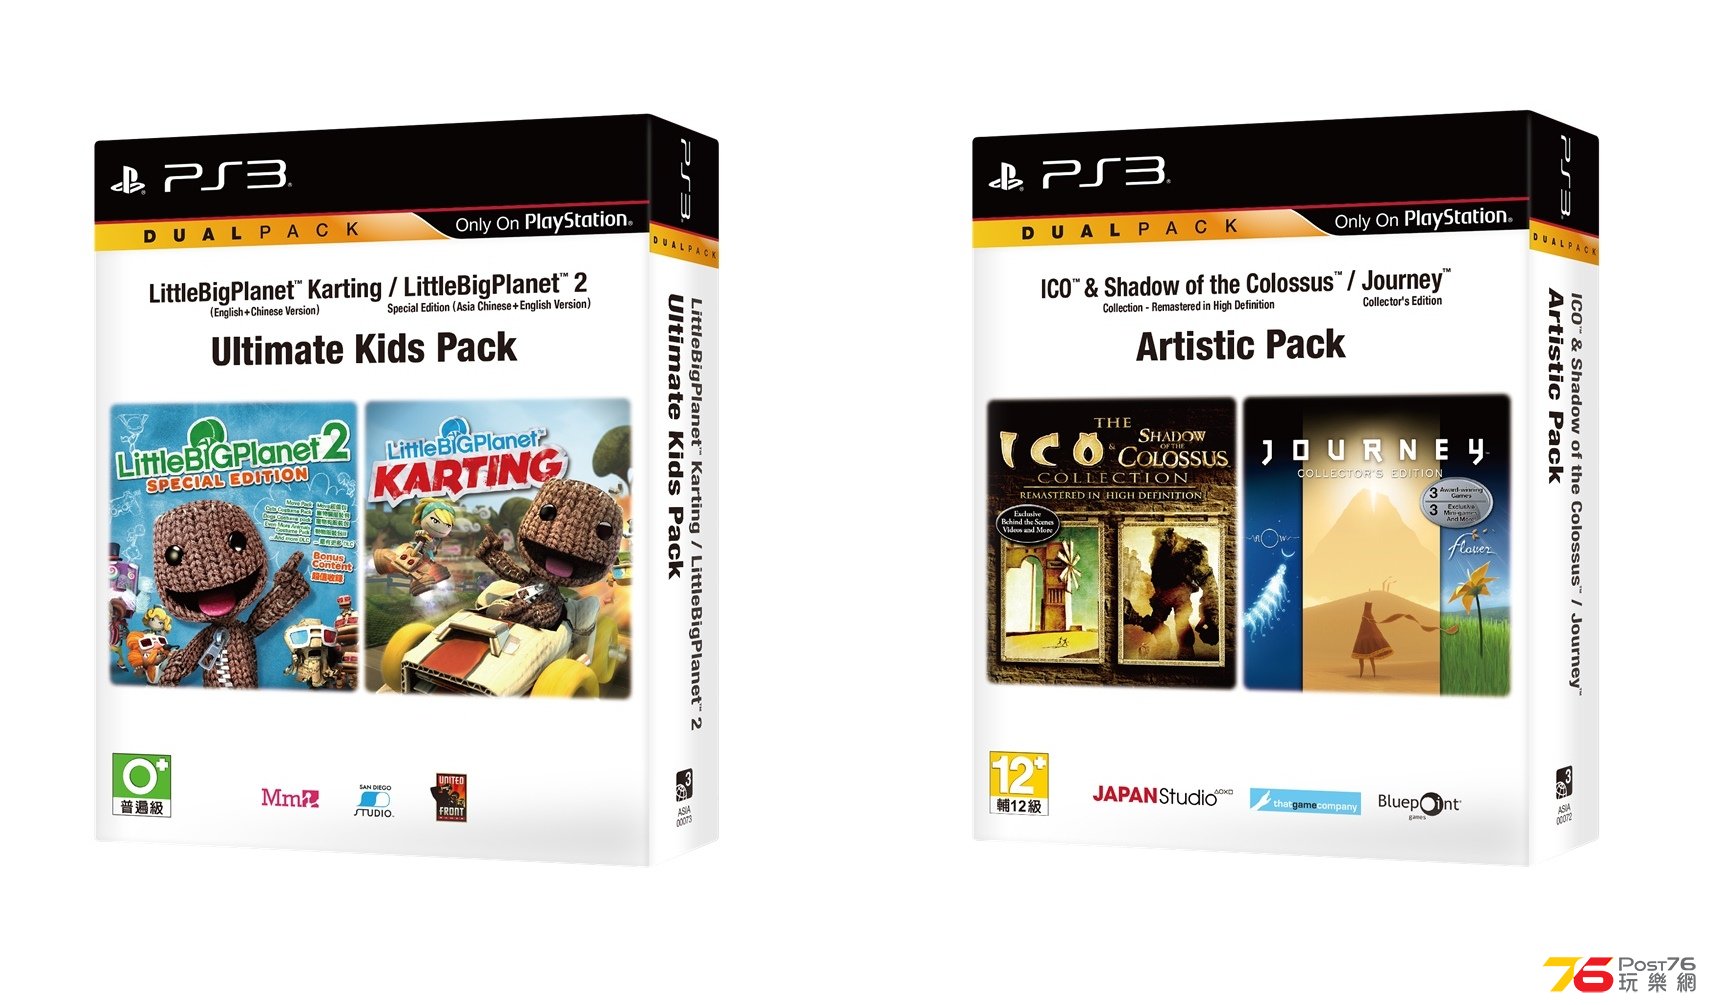 PS3_Dual Pack_HKD268.jpg